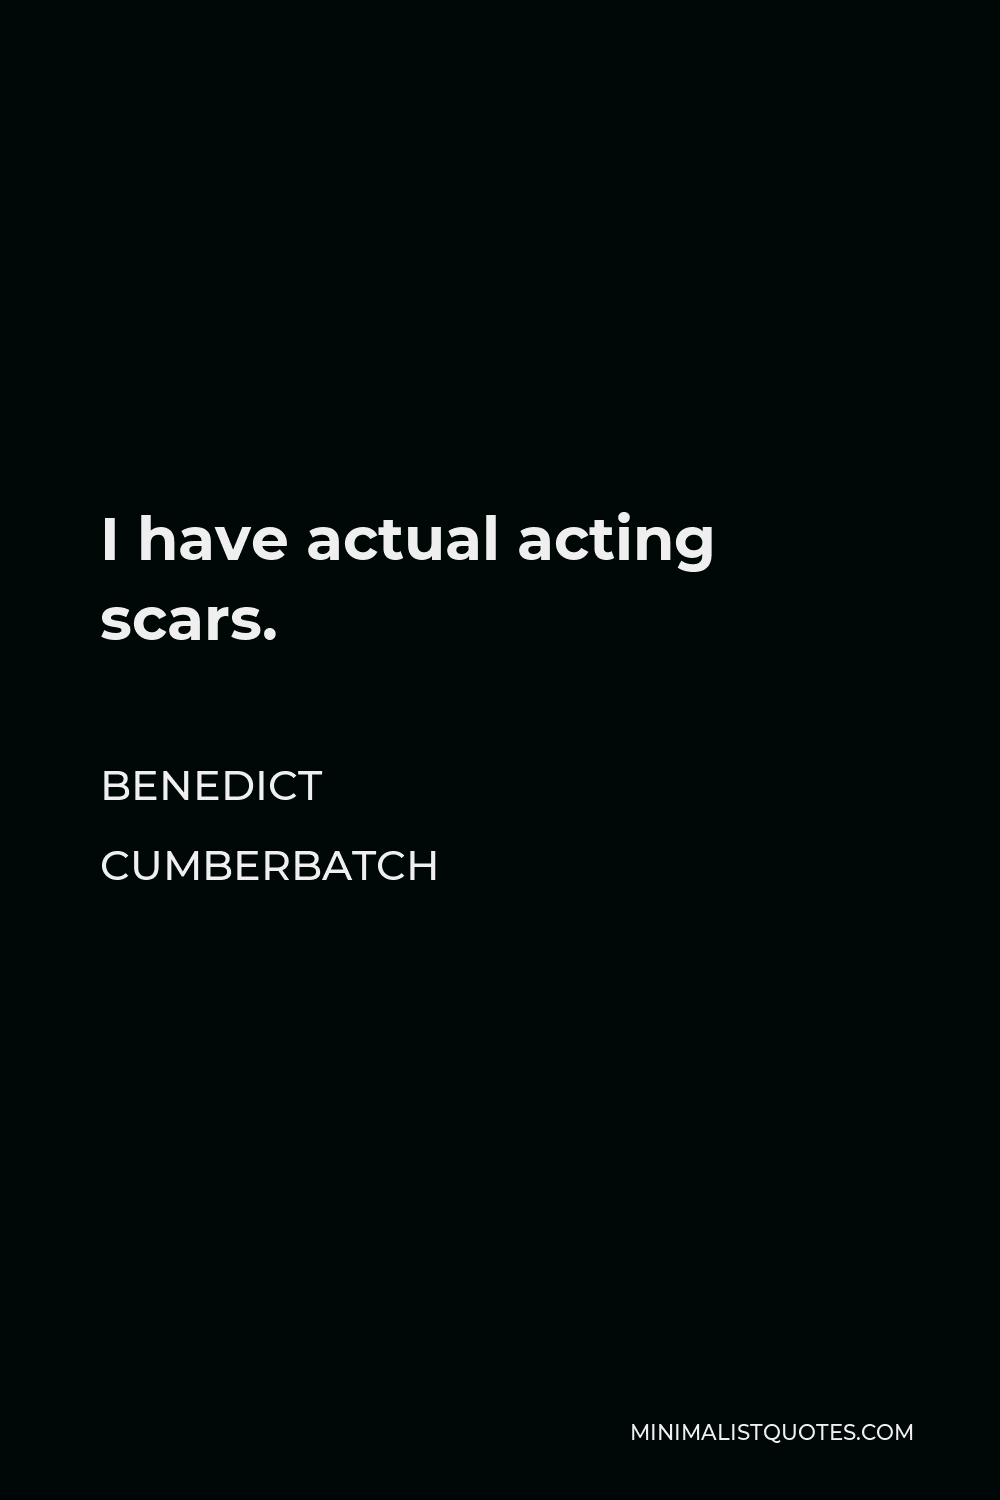 Benedict Cumberbatch Quote - I have actual acting scars.